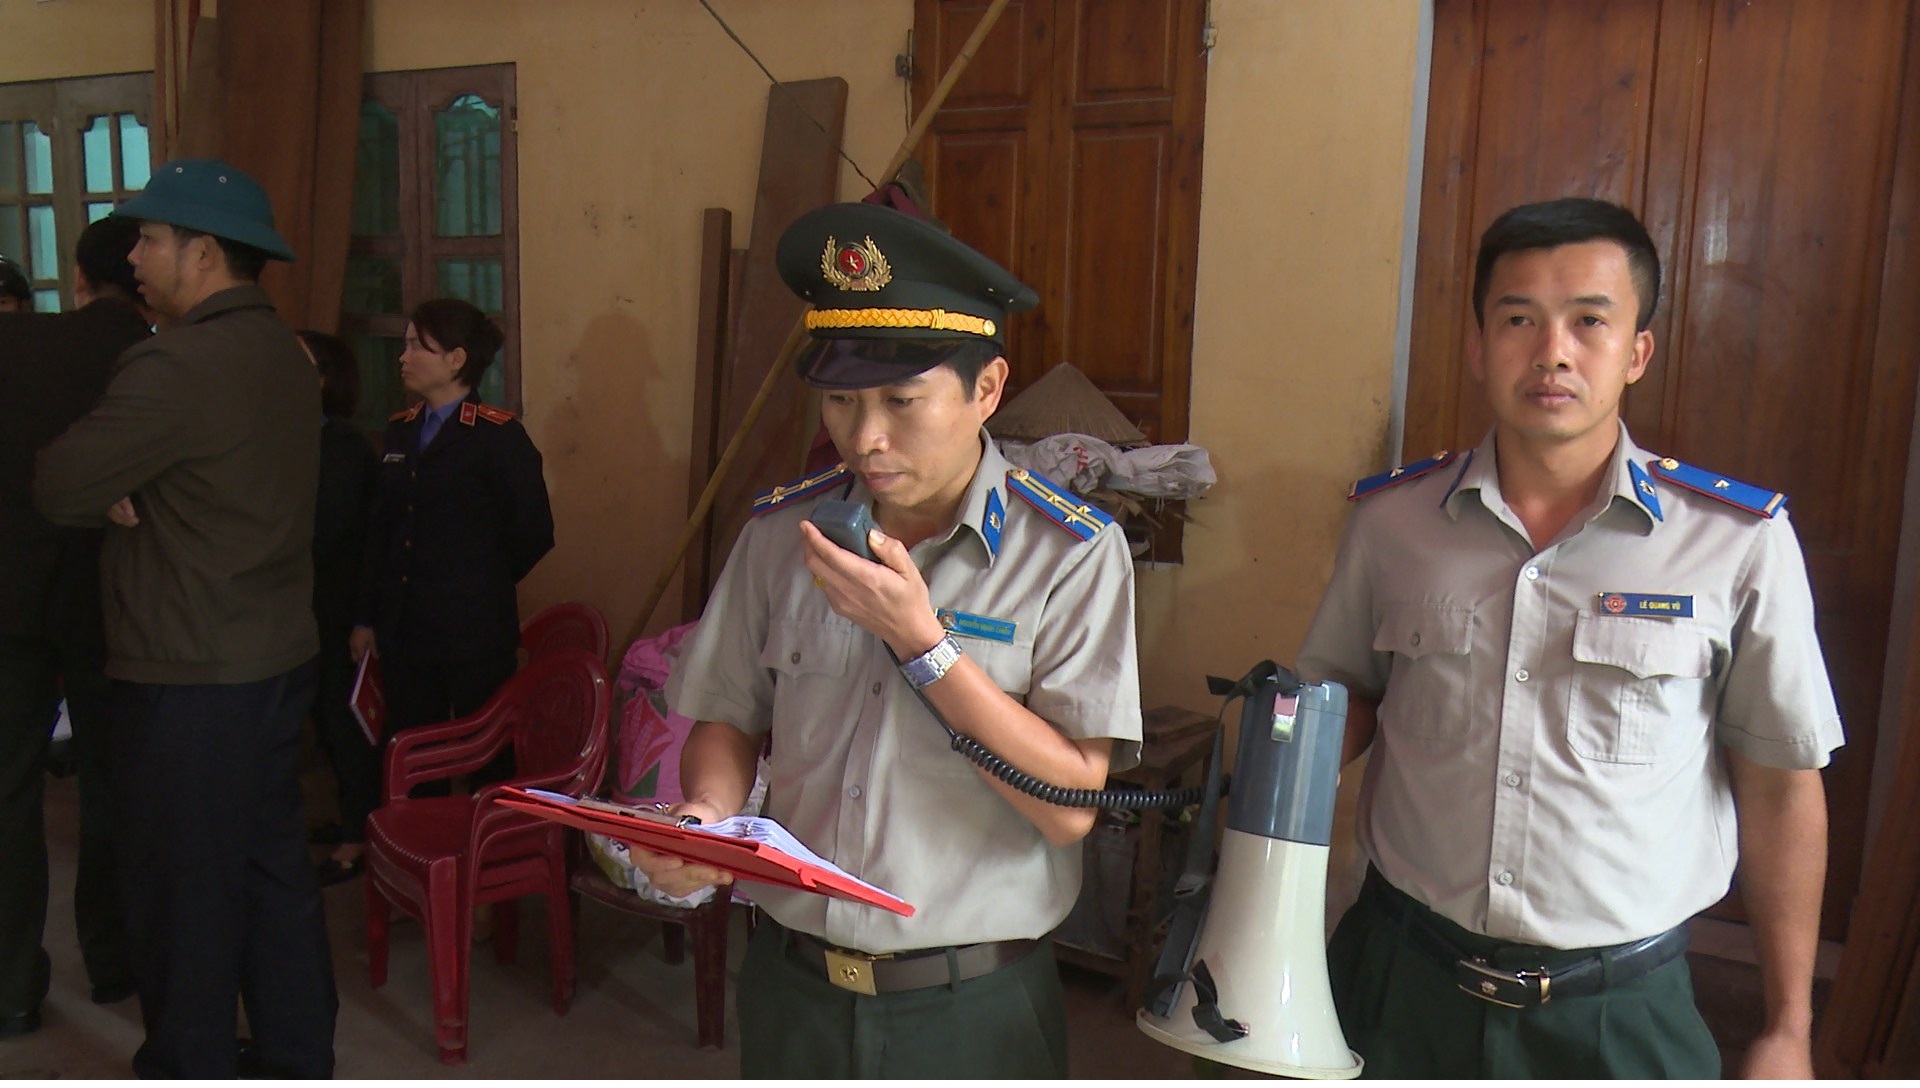 Chi cục Thi hành án dân sự huyện Yên Dũng tổ chức cưỡng chế thành công vụ giao tài sản cho người trúng đấu giá